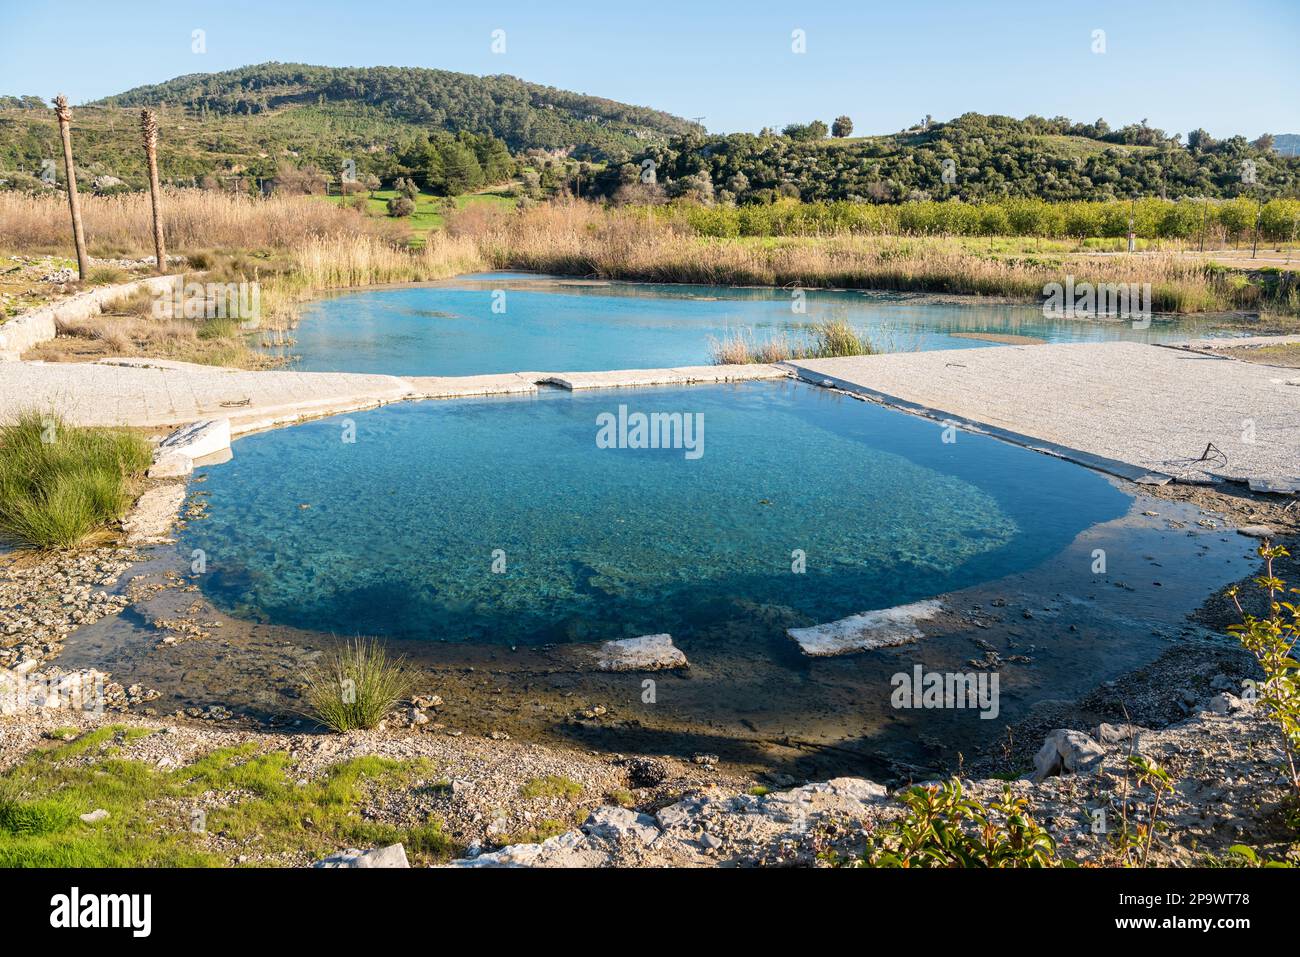 Piscine de Kapukargin bain thermal naturel de soufre près de la ville de Dalaman dans la province de Mugla en Turquie. Banque D'Images